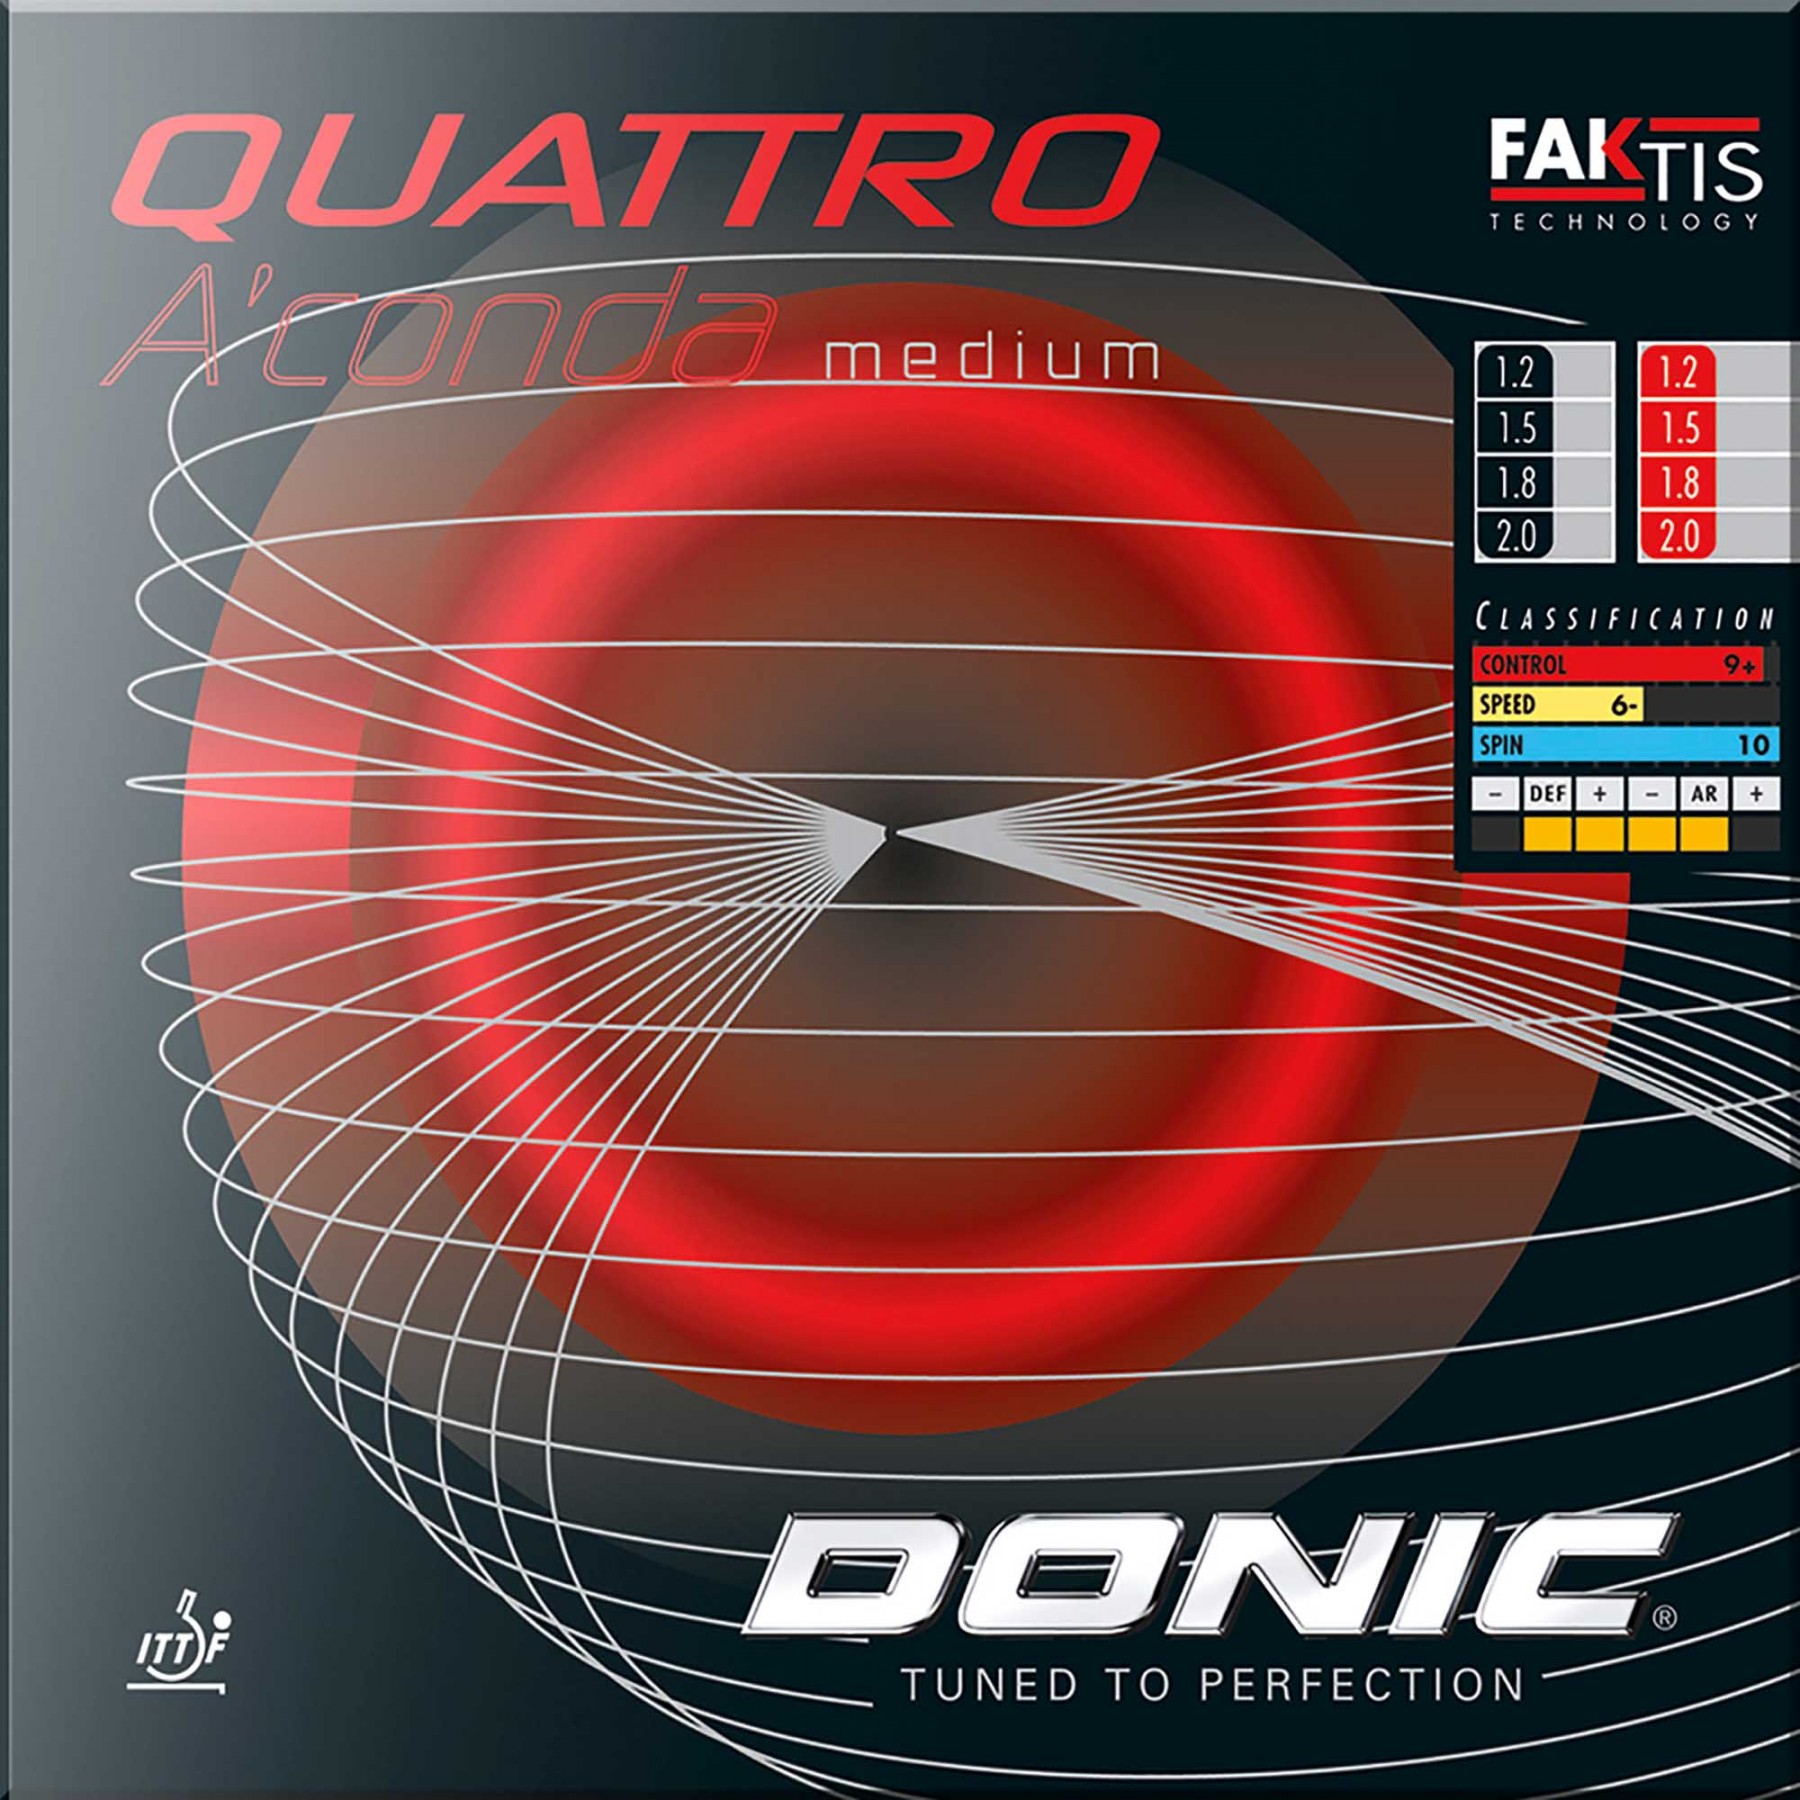 Donic Quattro A'conda medium von Donic